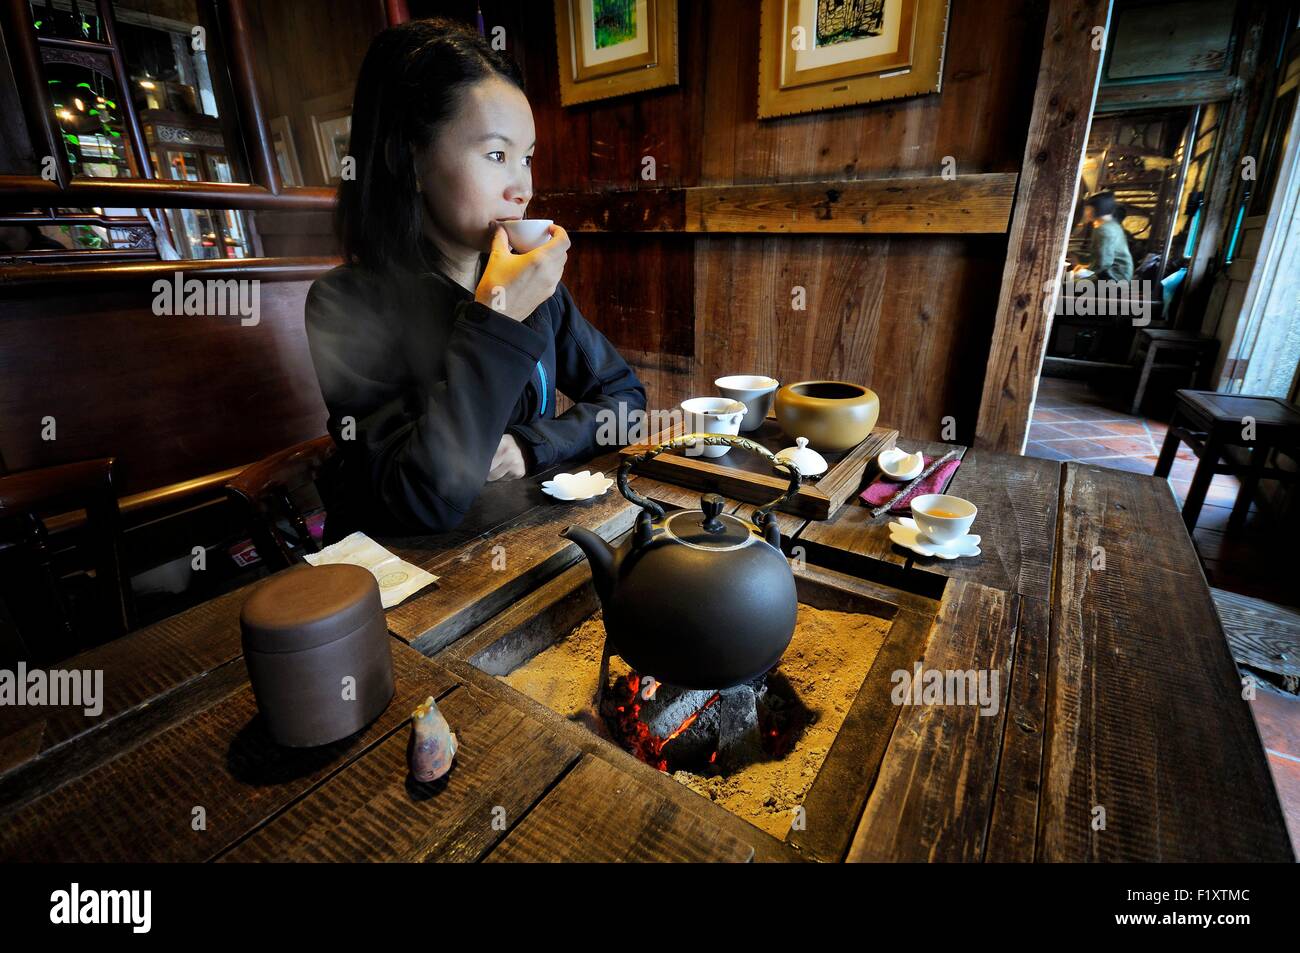 Taiwan, New Taipei City, Ruifang, Jiufen (Chiufen), Asian woman in an old teahouse at Jiufen Tea House Stock Photo